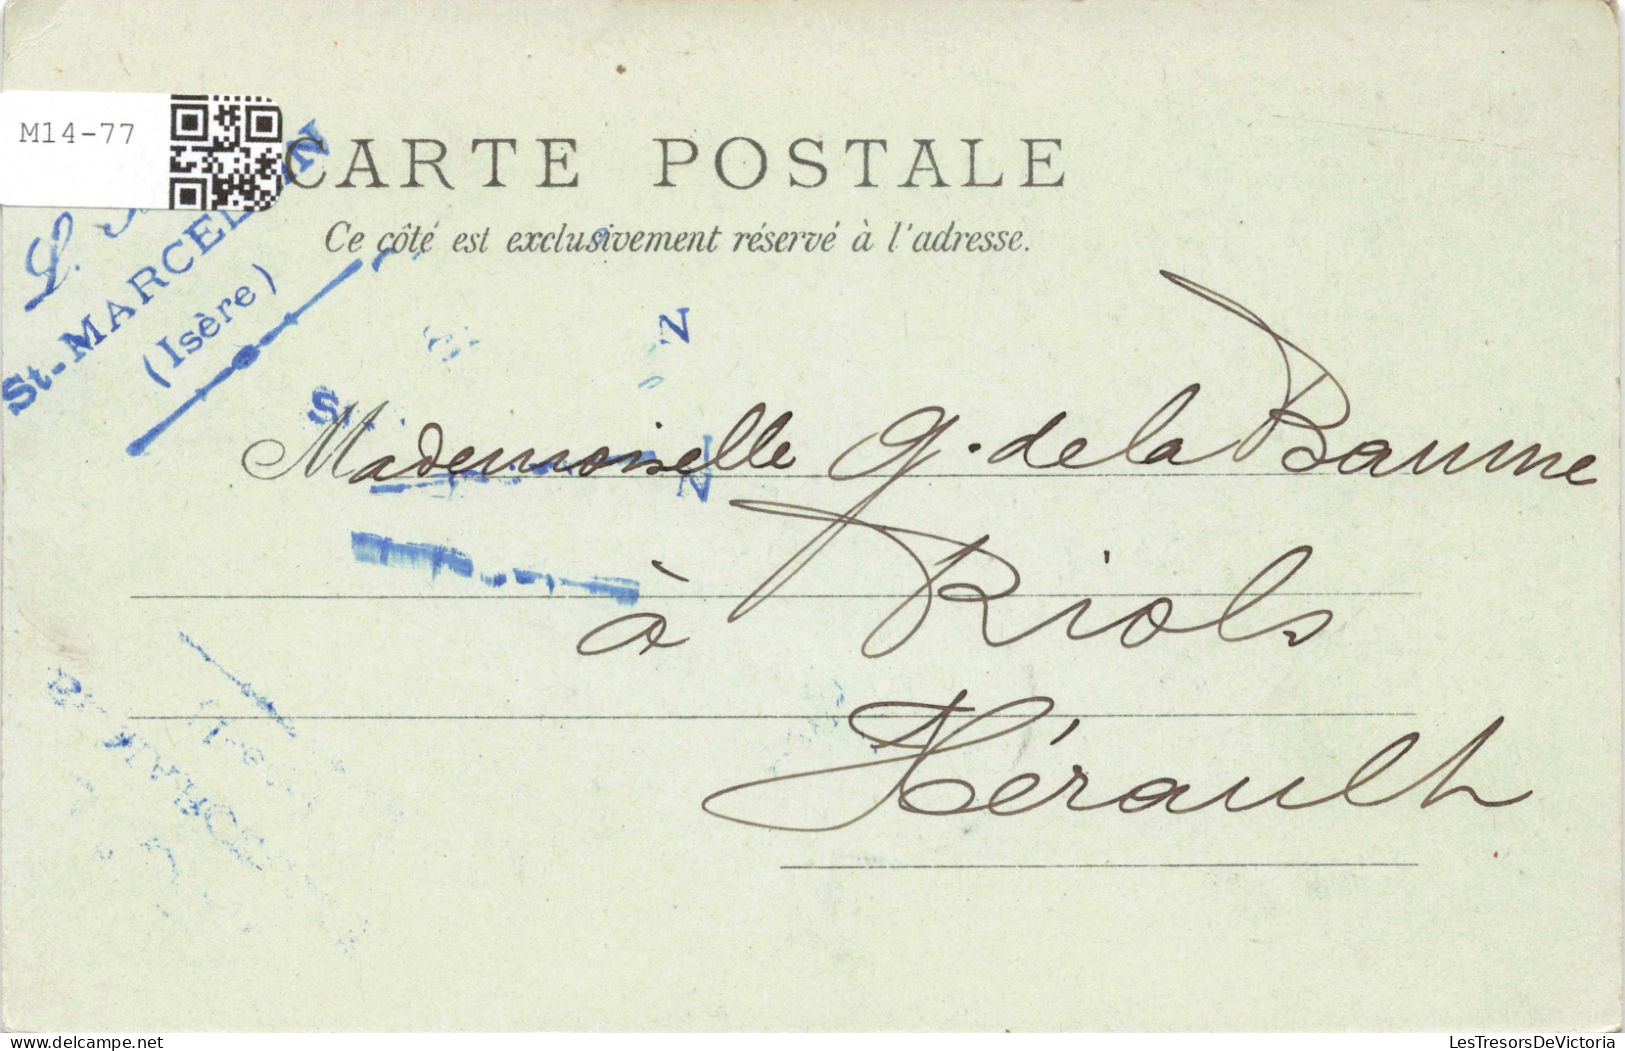 FRANCE - Vue Générale De Pont En Royans (Isère) - Carte Postale Ancienne - Pont-en-Royans